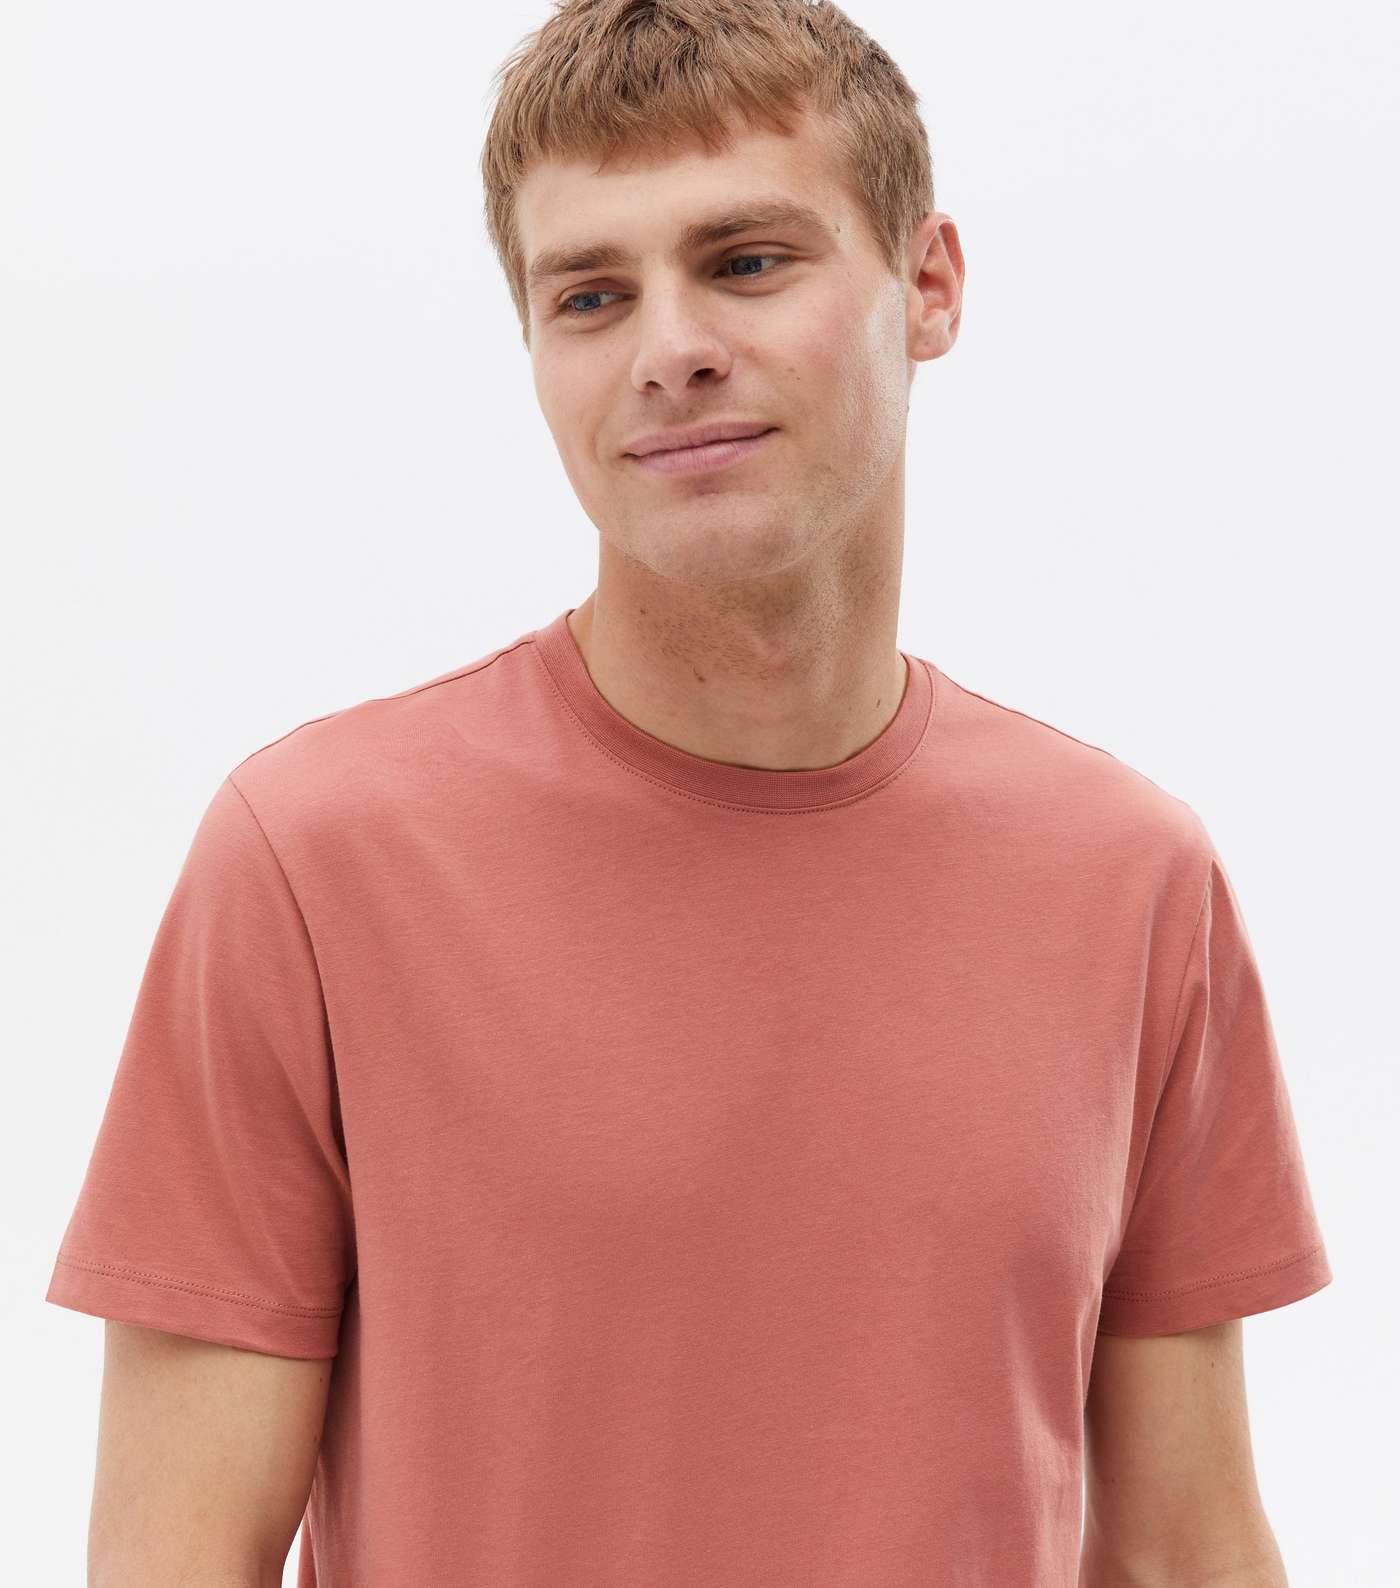 Orange Jersey Crew Neck Short Sleeve T-Shirt Image 3